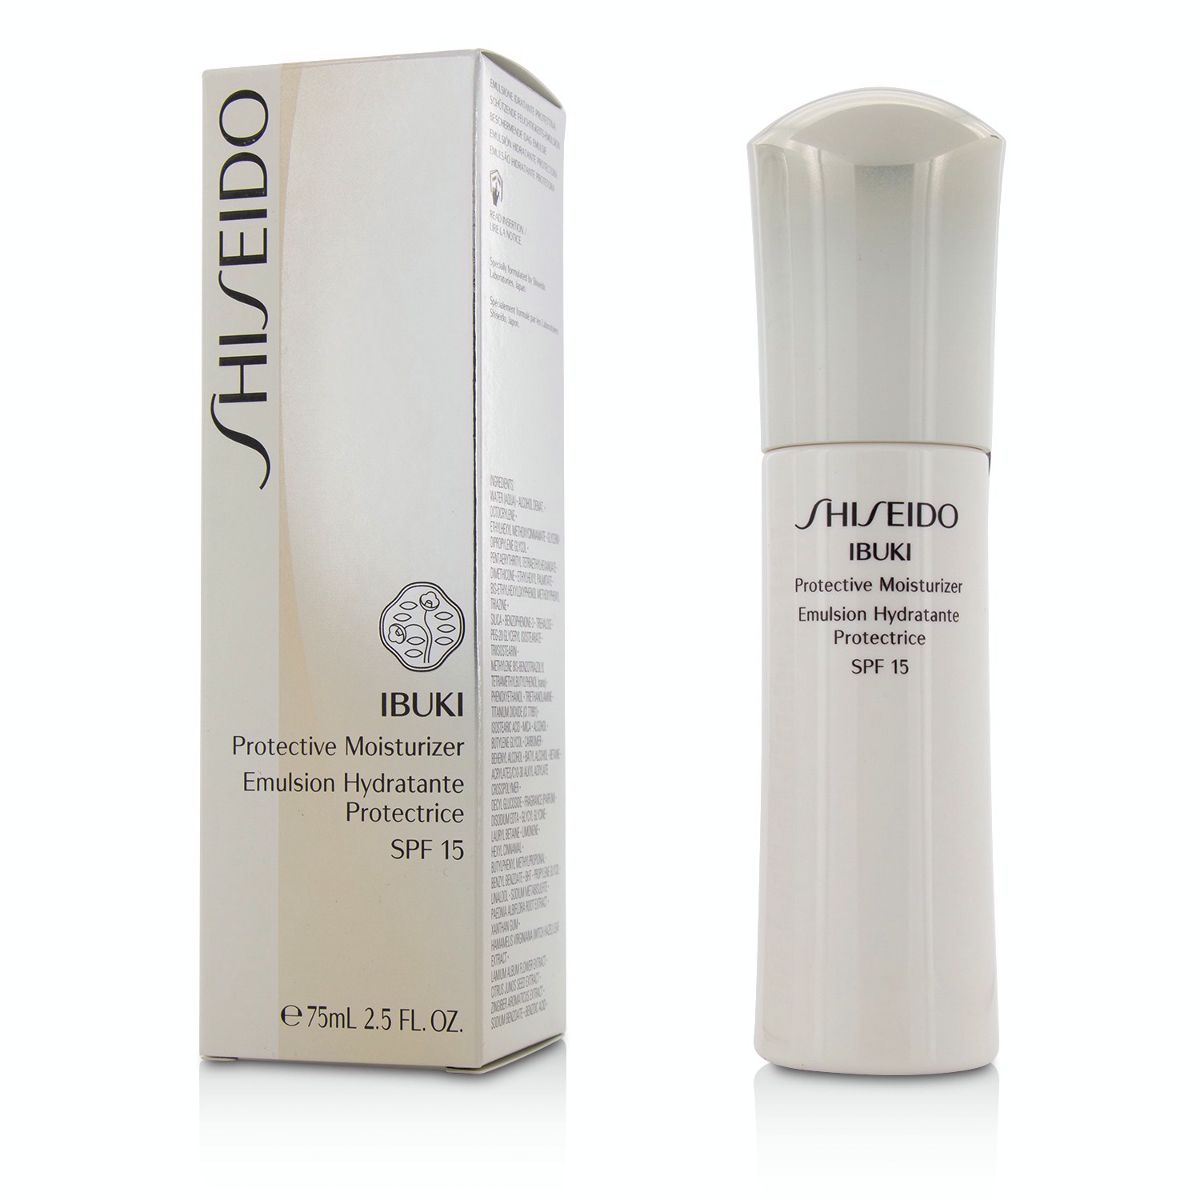 IBUKI Protective Moisturizer SPF15 Shiseido Image